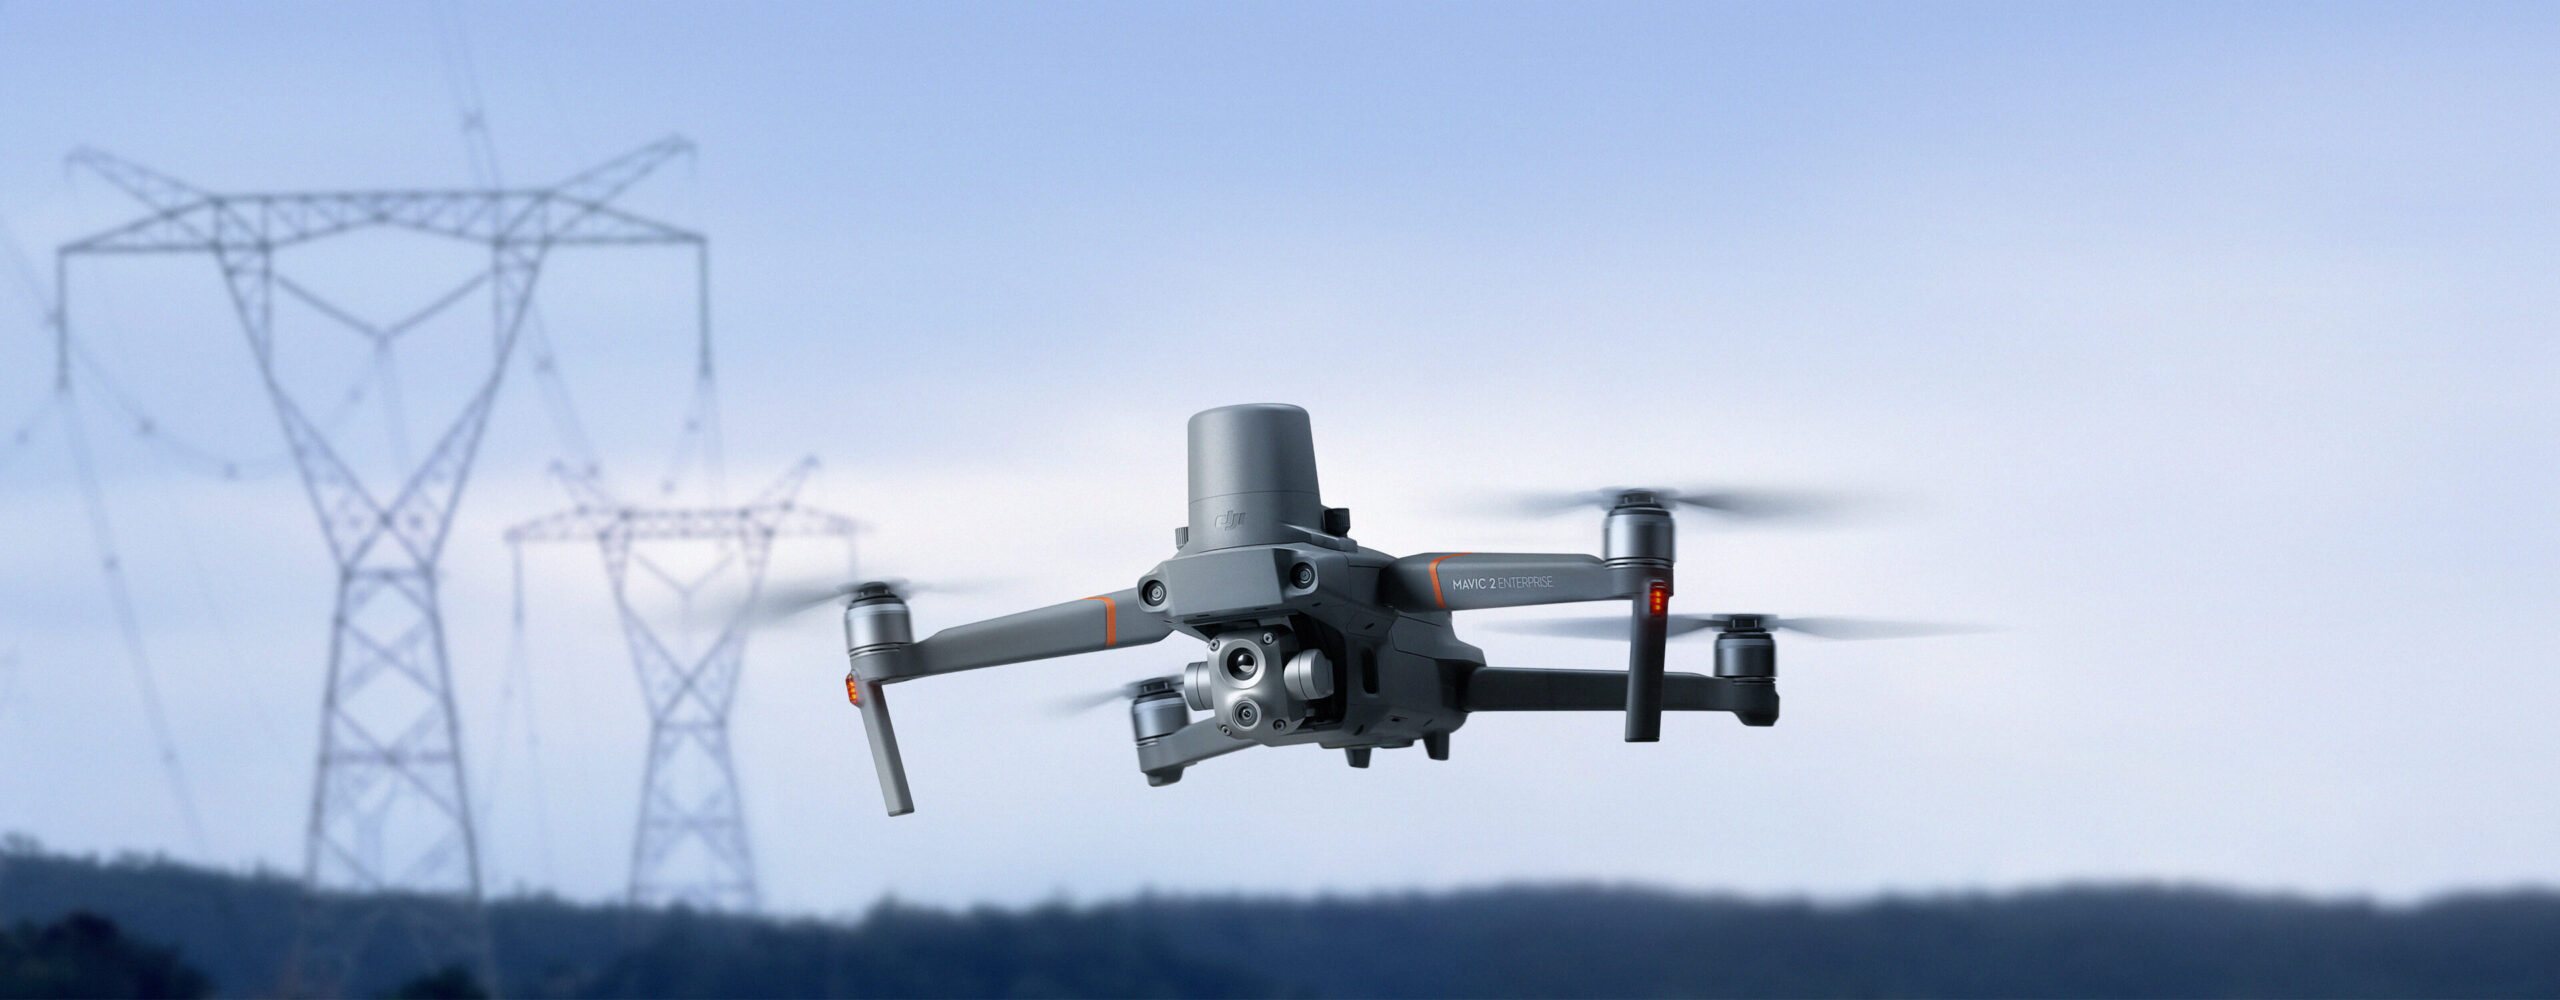 MAV2EA COMBO scaled - Những lợi ích khi sử dụng Drone trong chữa cháy